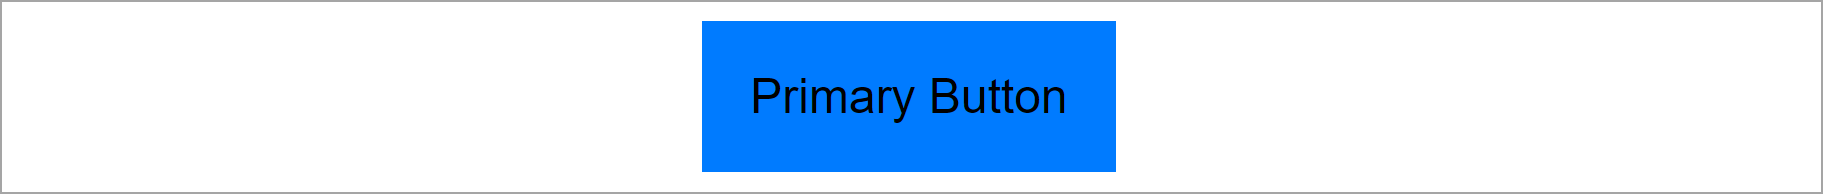 Un estilo de botón primario basado en el tema.